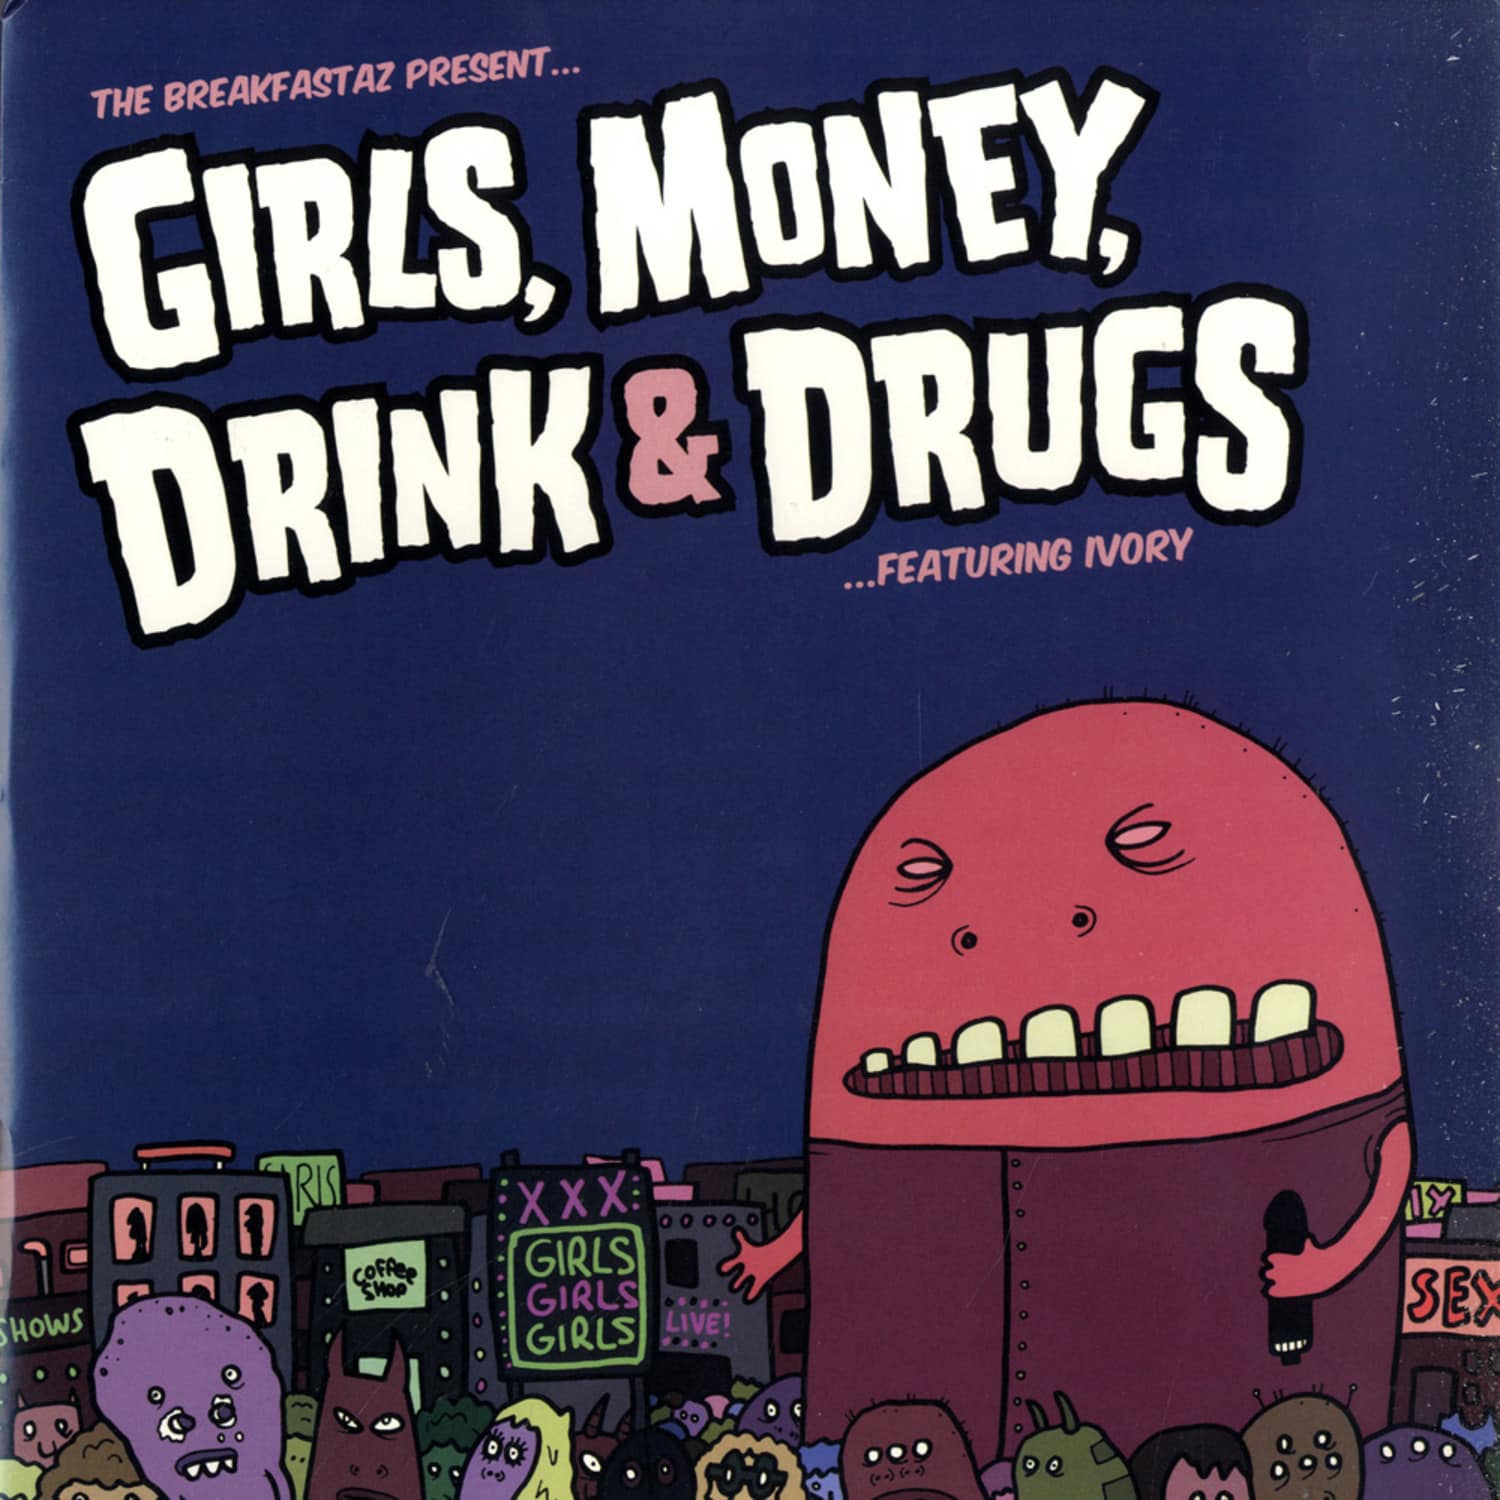 Breakfastaz - GIRLS, MONEY, DRINK & DRUGS